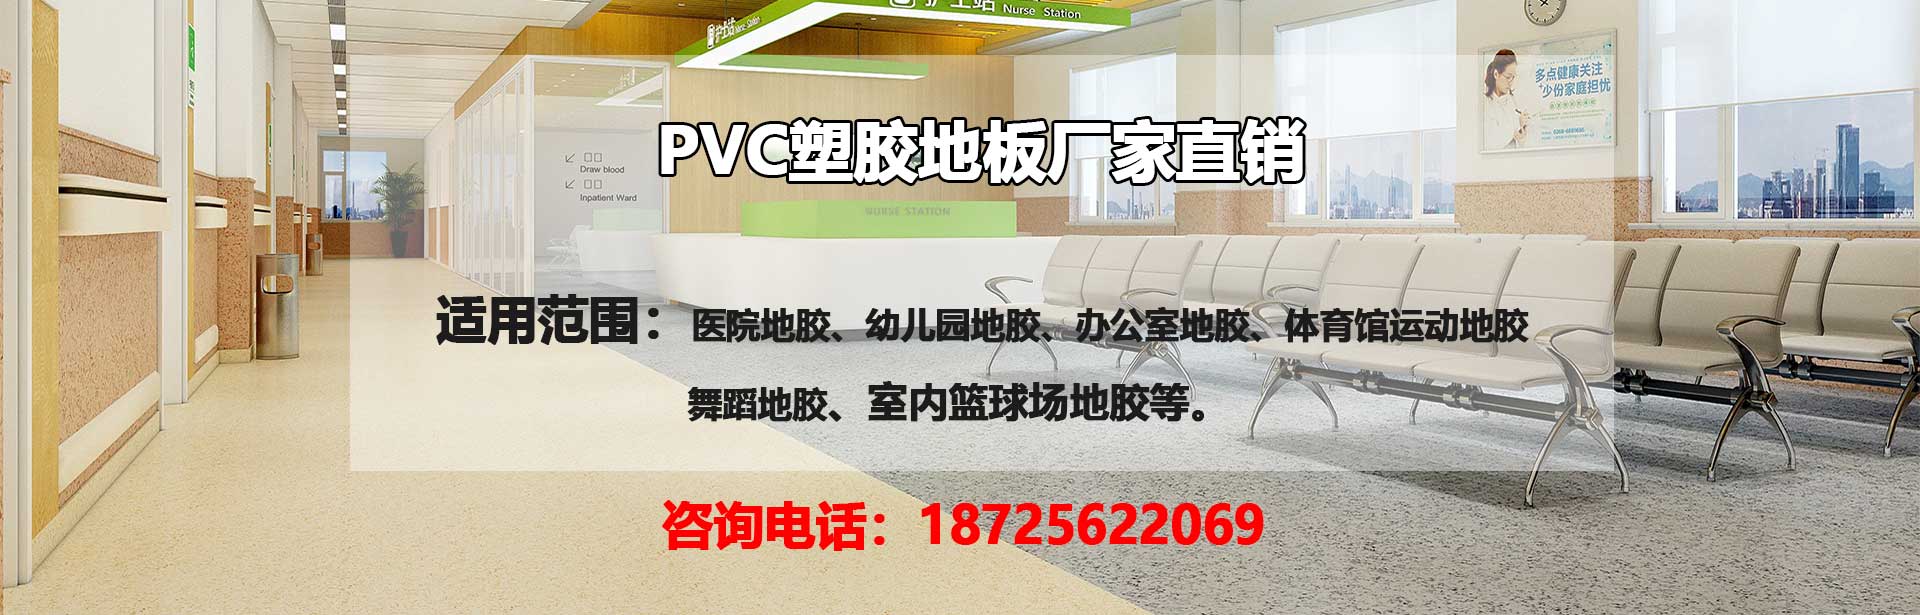 潮州PVC塑胶地板